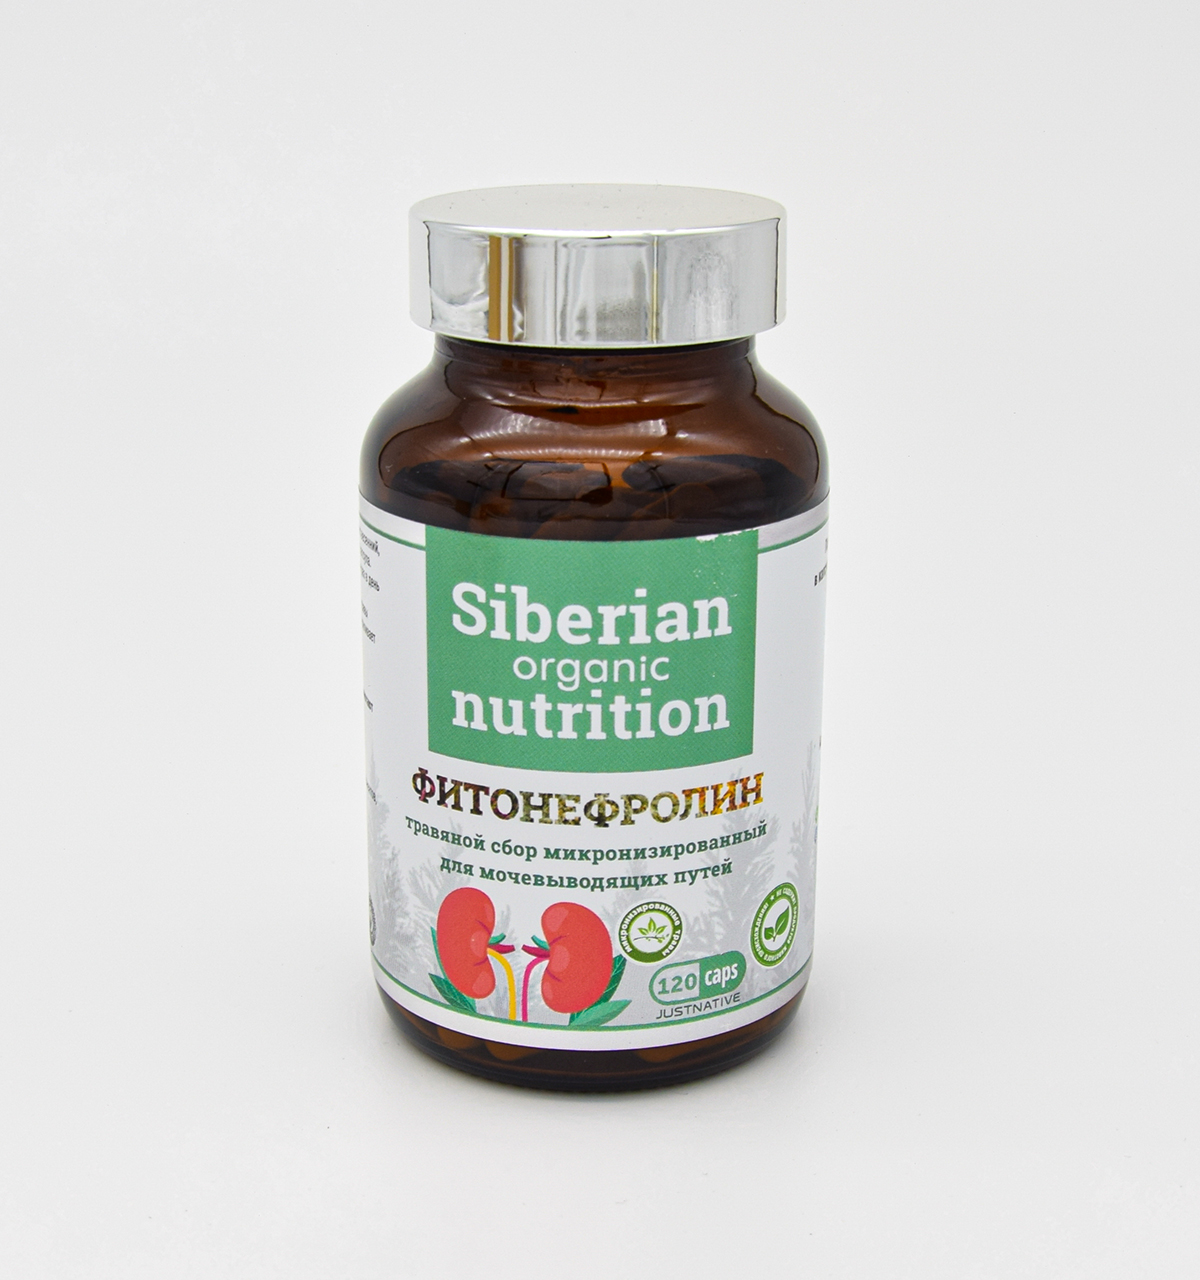 Siberian organic Фитонефролин травяной сбор для мочевыводящих путей 120 капс